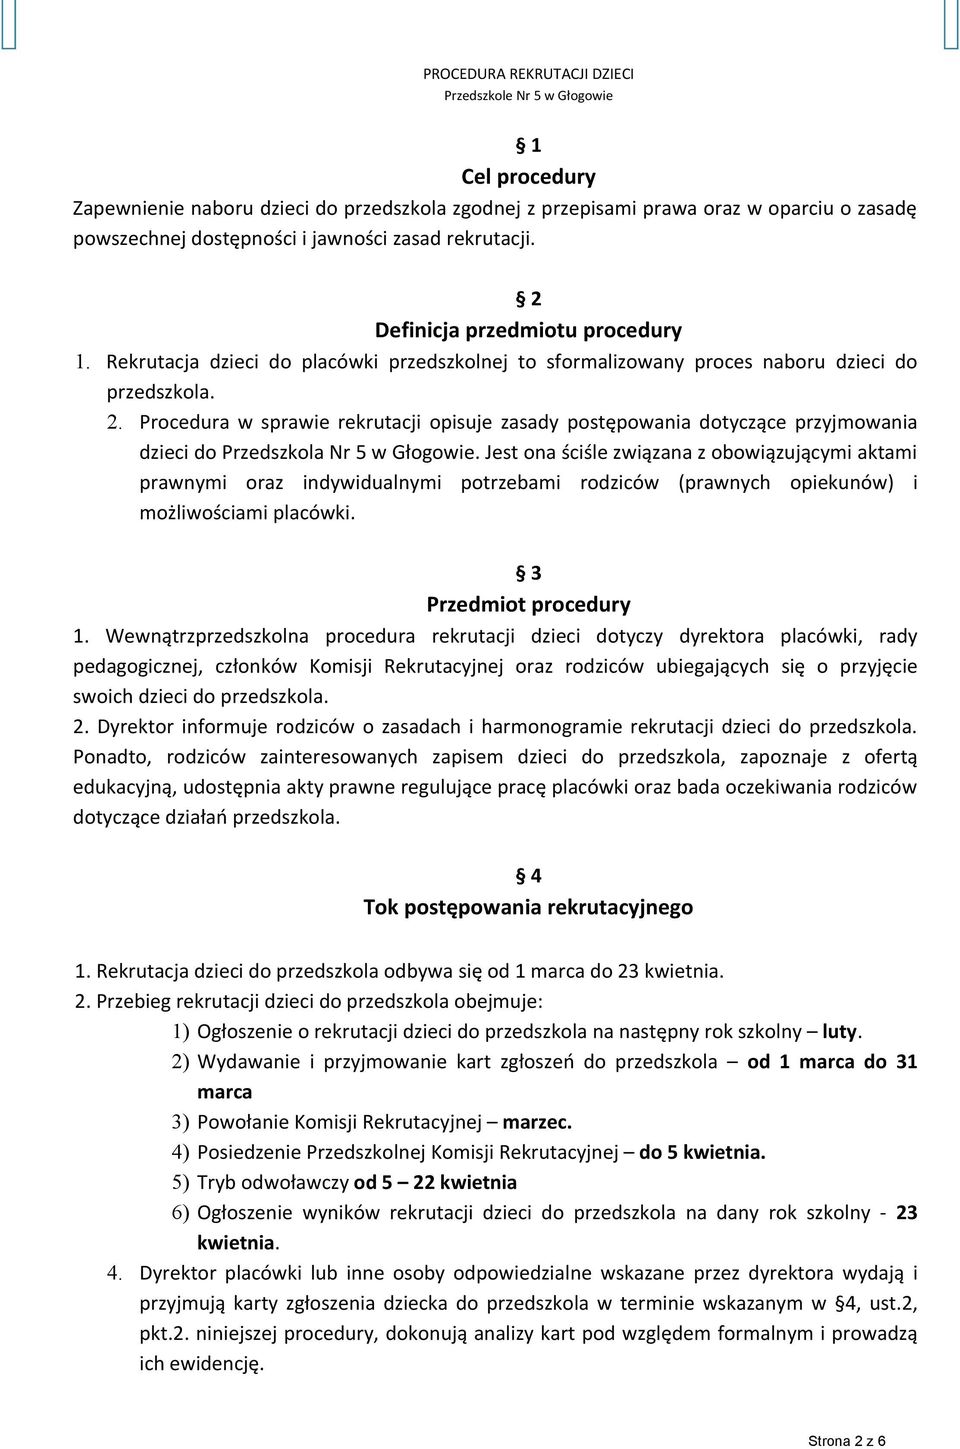 Procedura w sprawie rekrutacji opisuje zasady postępowania dotyczące przyjmowania dzieci do Przedszkola Nr 5 w Głogowie.